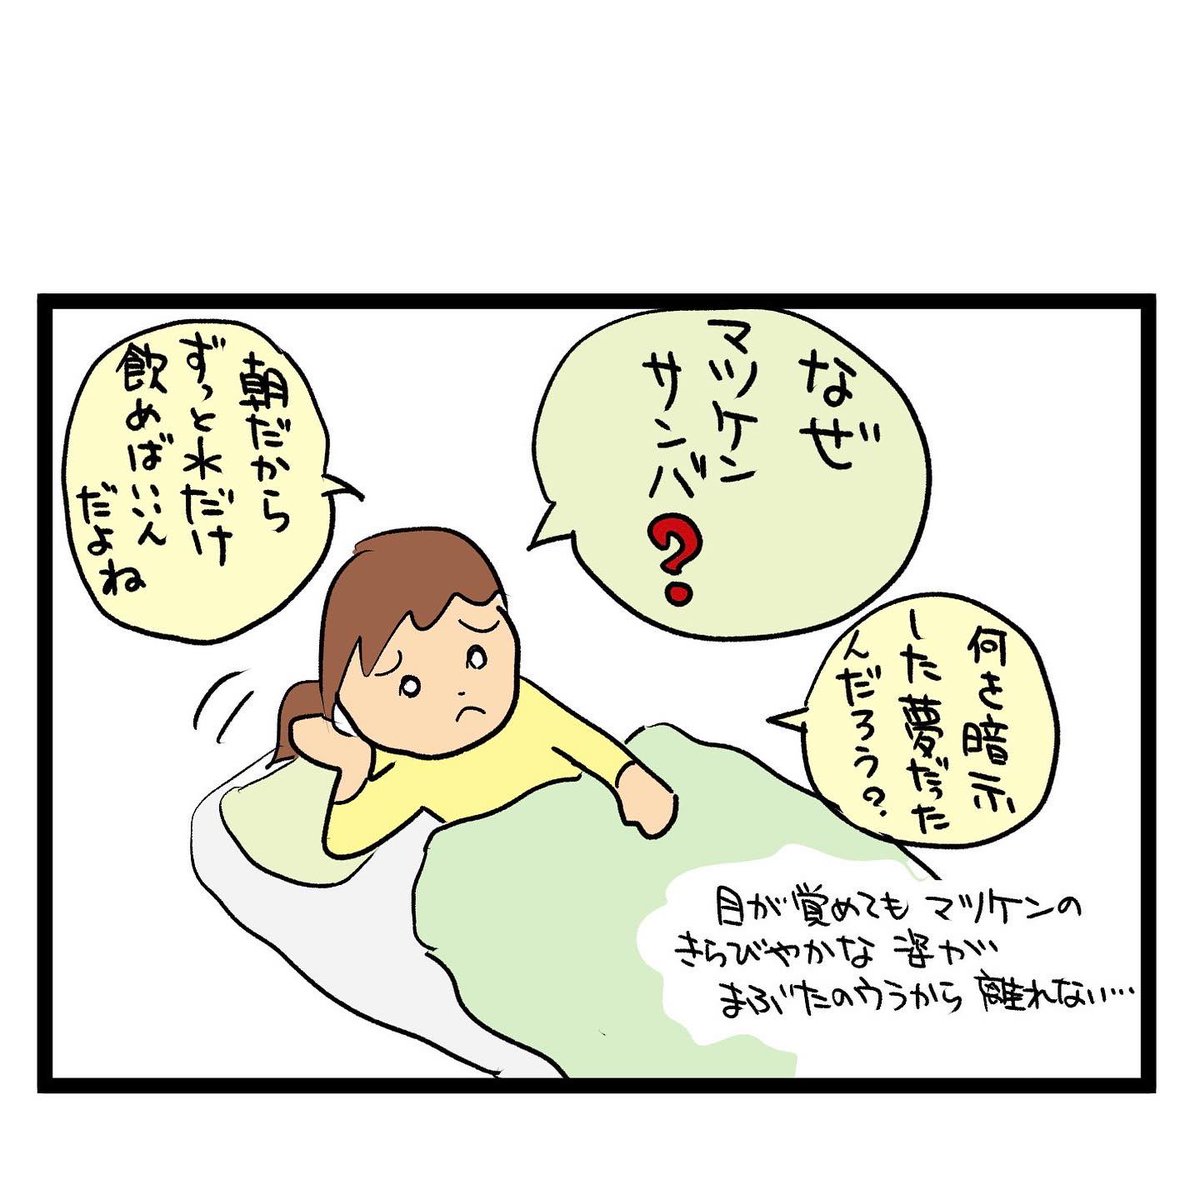 #四コマ漫画
#健康診断
#マツケンサンバ 